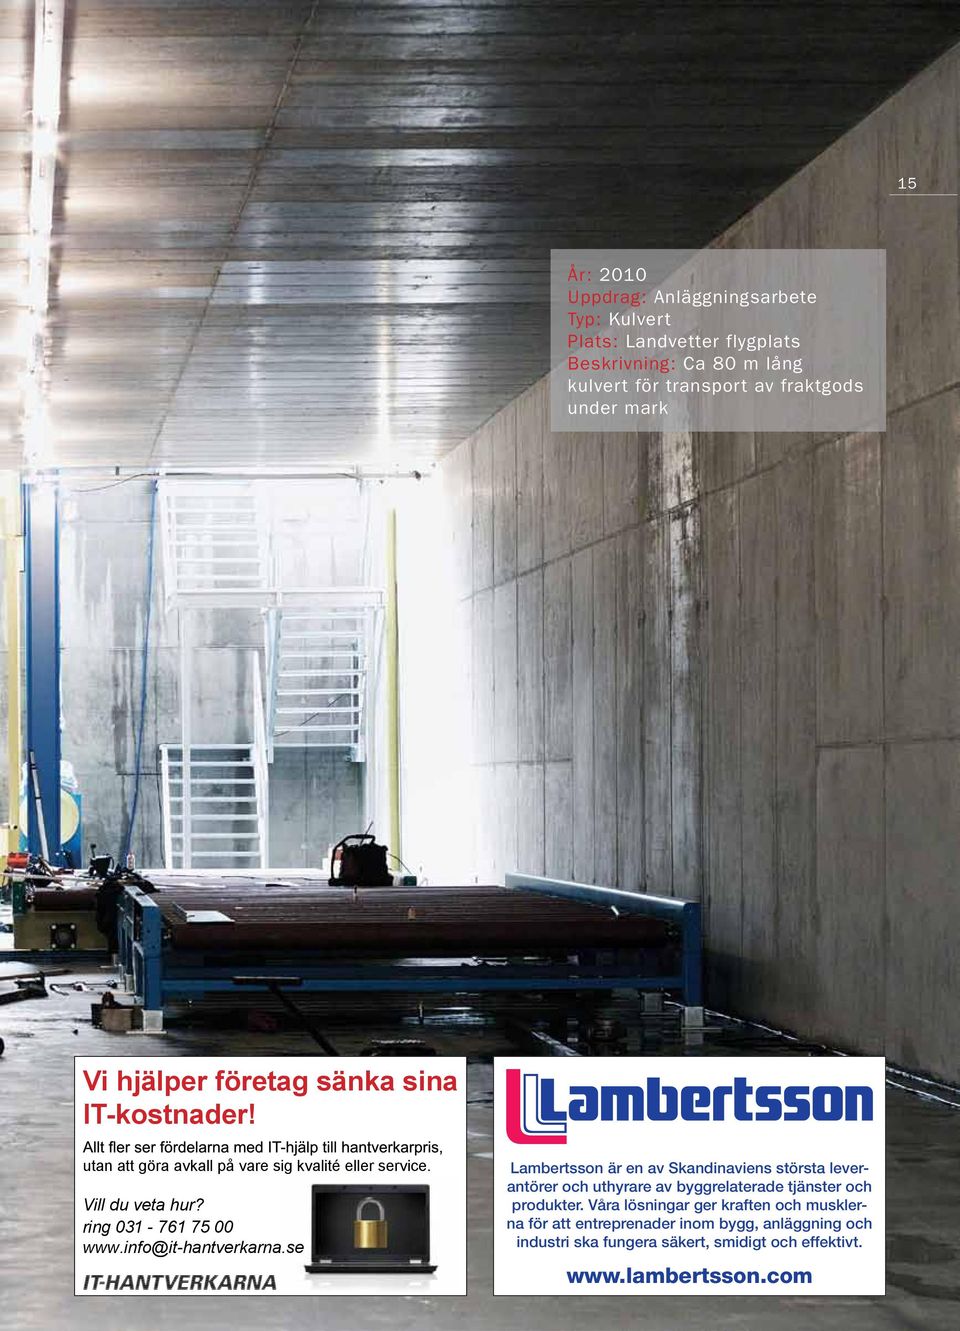 info@it-hantverkarna.se Lambertsson är en av Skandinaviens största leverantörer och uthyrare av byggrelaterade tjänster och produkter.